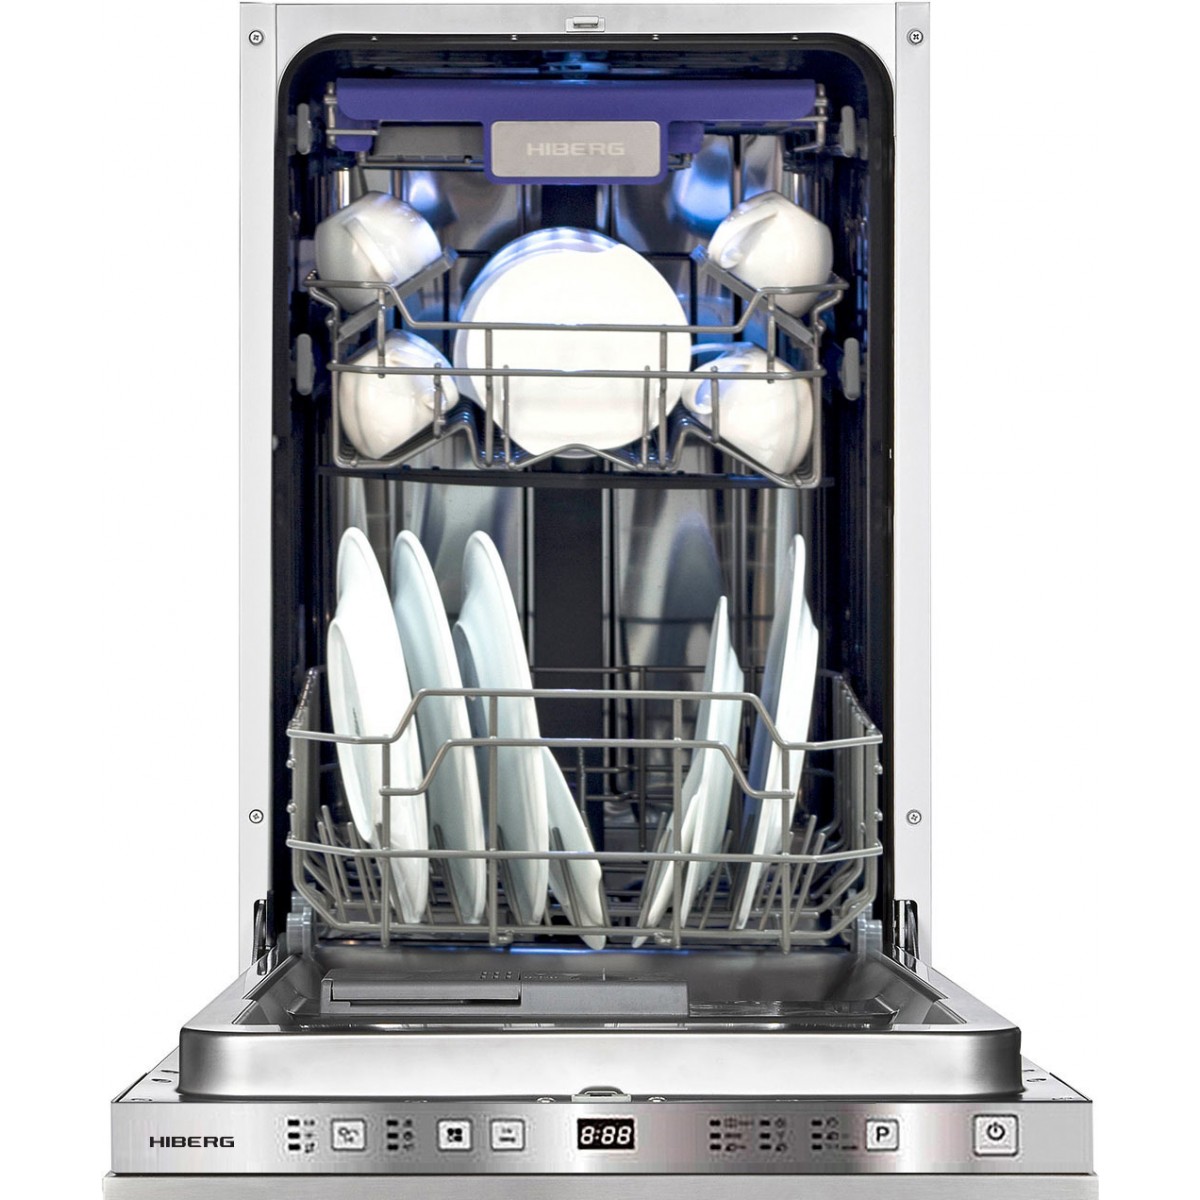 Днс купить посудомоечную встраиваемую. Посудомоечная машина HIBERG i49 1032. Посудомоечная машина HIBERG f48 1030 w. Посудомоечная машина avex i49 1032.